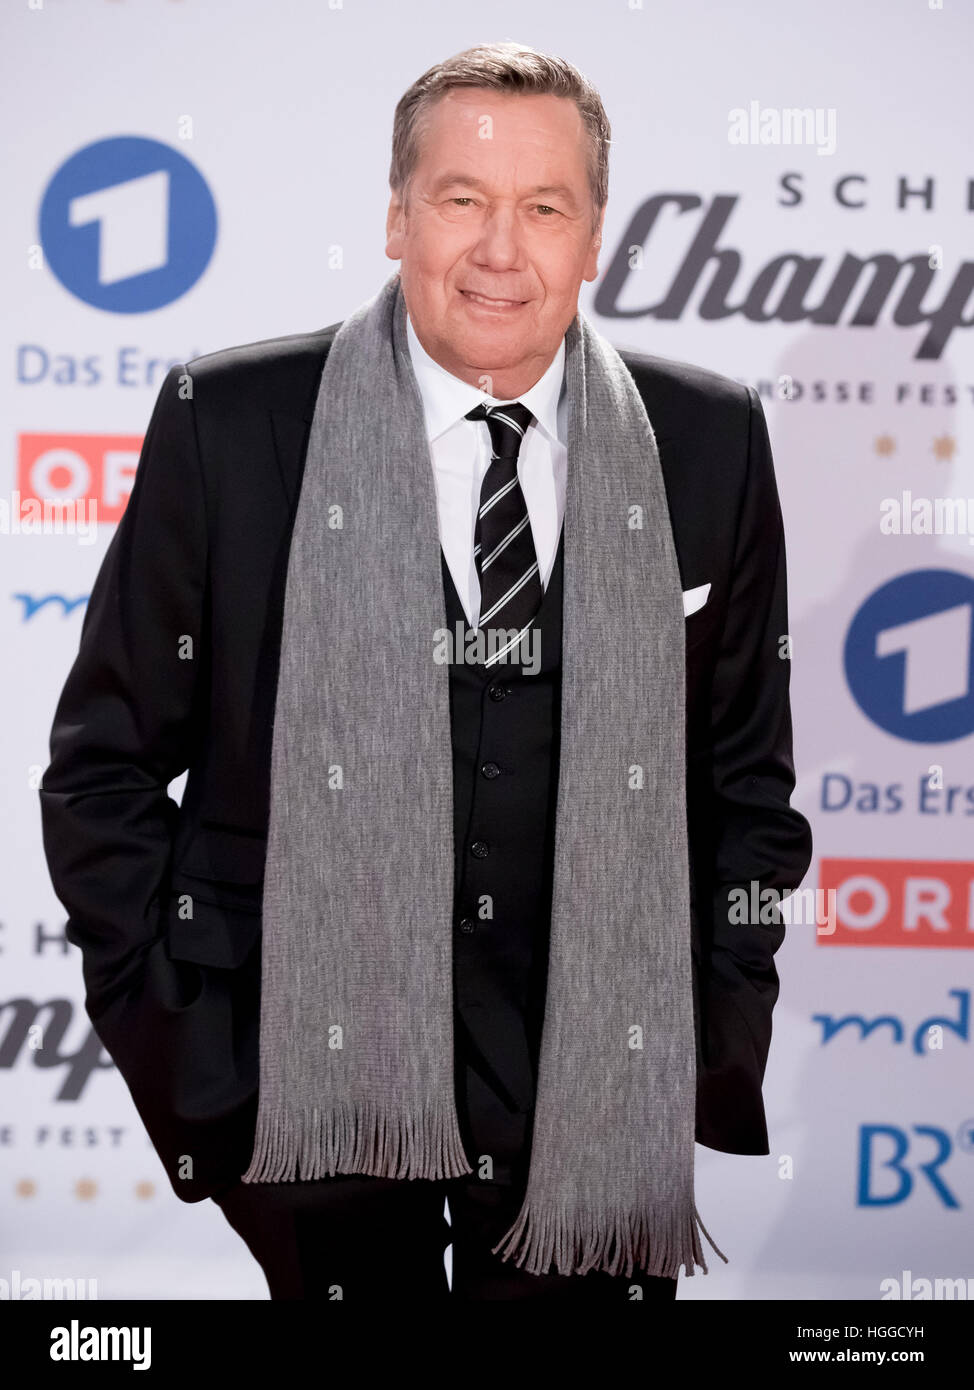 Il cantante Roland Kaiser durante lo spettacolo TV " Hit Champions - la gran parte dei migliori" presso il velodromo di Berlino, Germania, 7 gennaio 2017. Foto: Andreas Lander/dpa Foto Stock